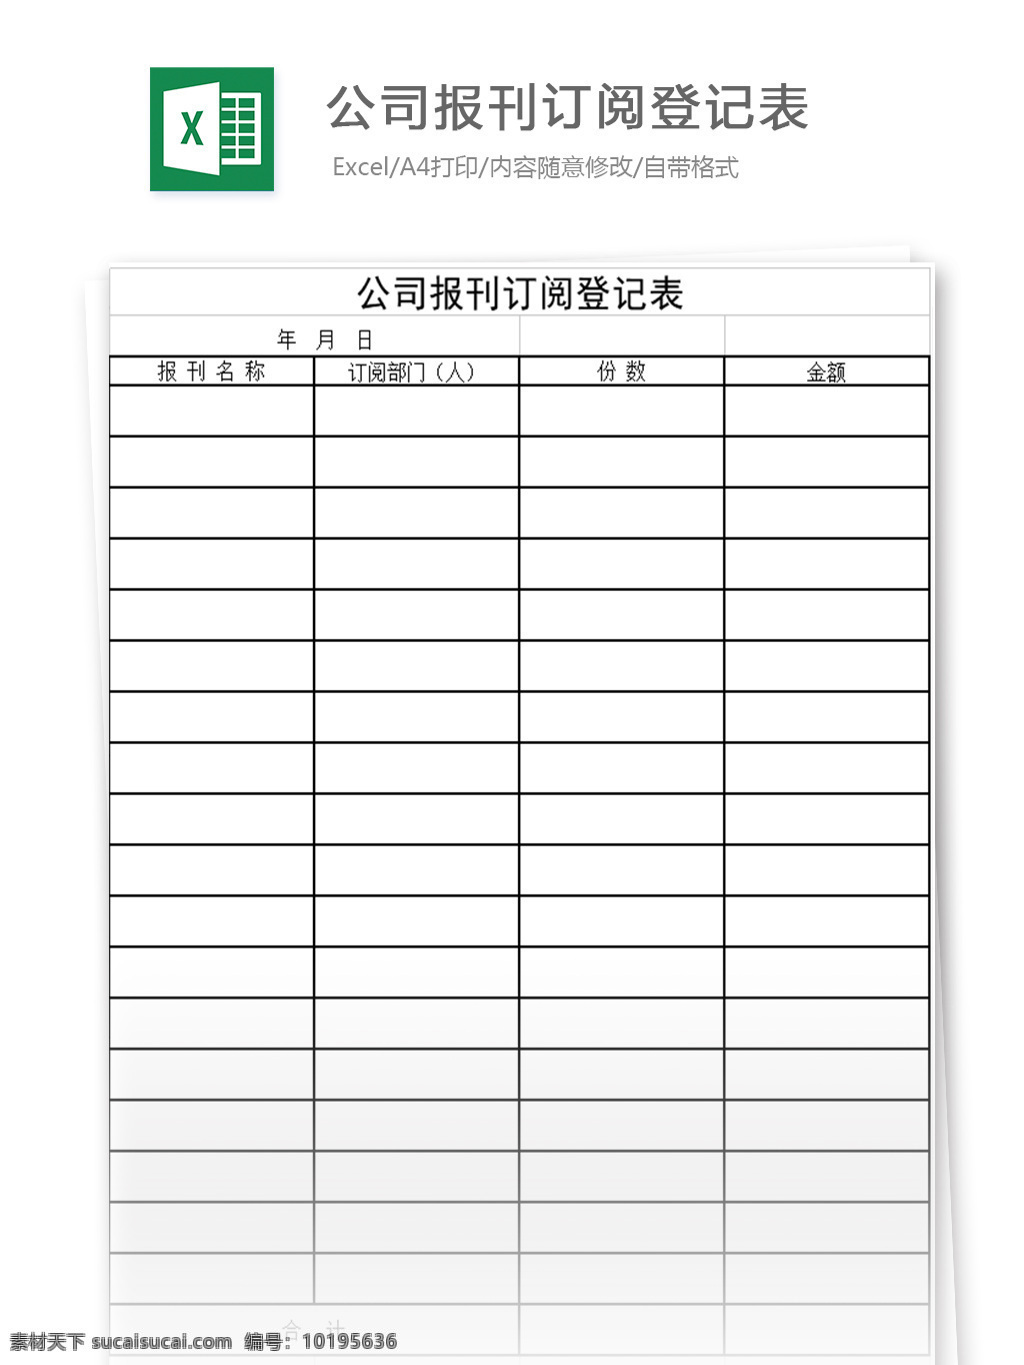 公司 报刊订阅 登记表 表格 表格模板 表格设计 图表 安排清单